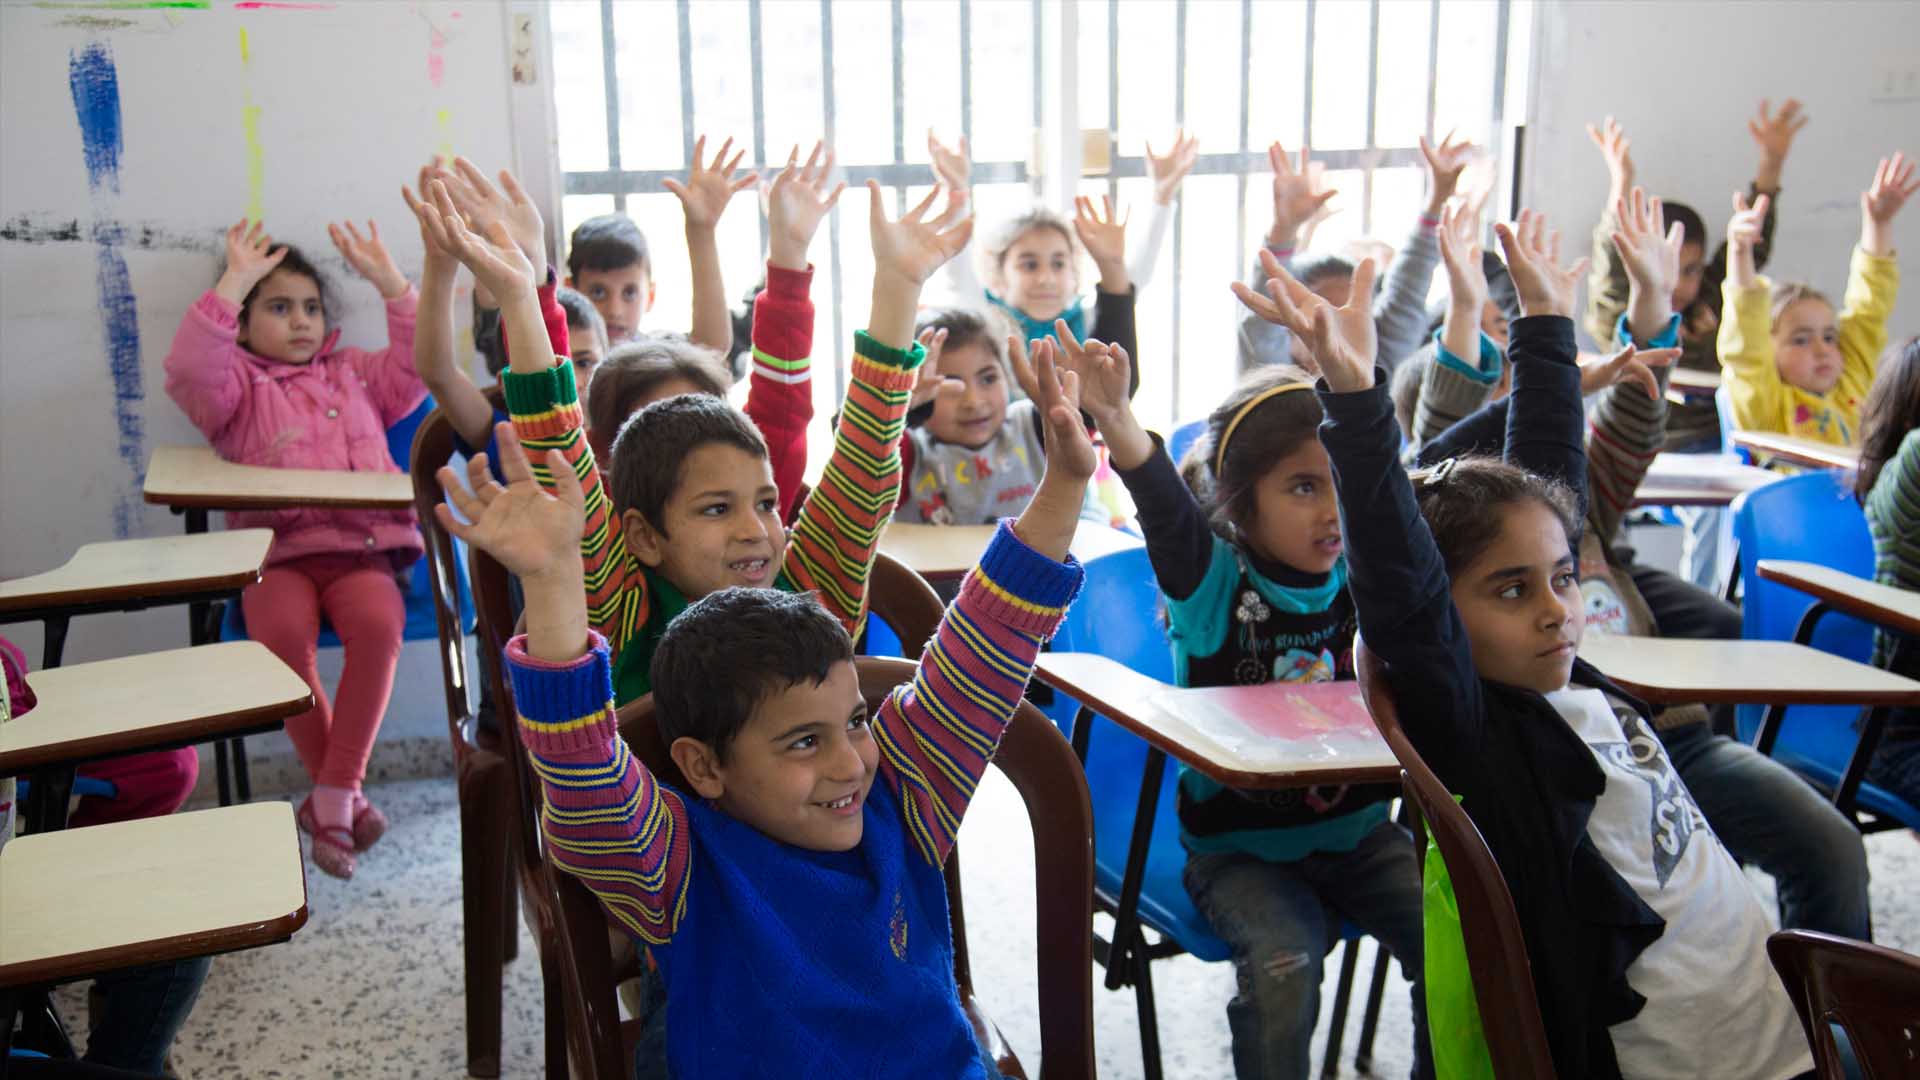 Niko Filis, ministro griego, anunció un plan que pretende escolarizar a más de 20 mil refugiados menores de edad